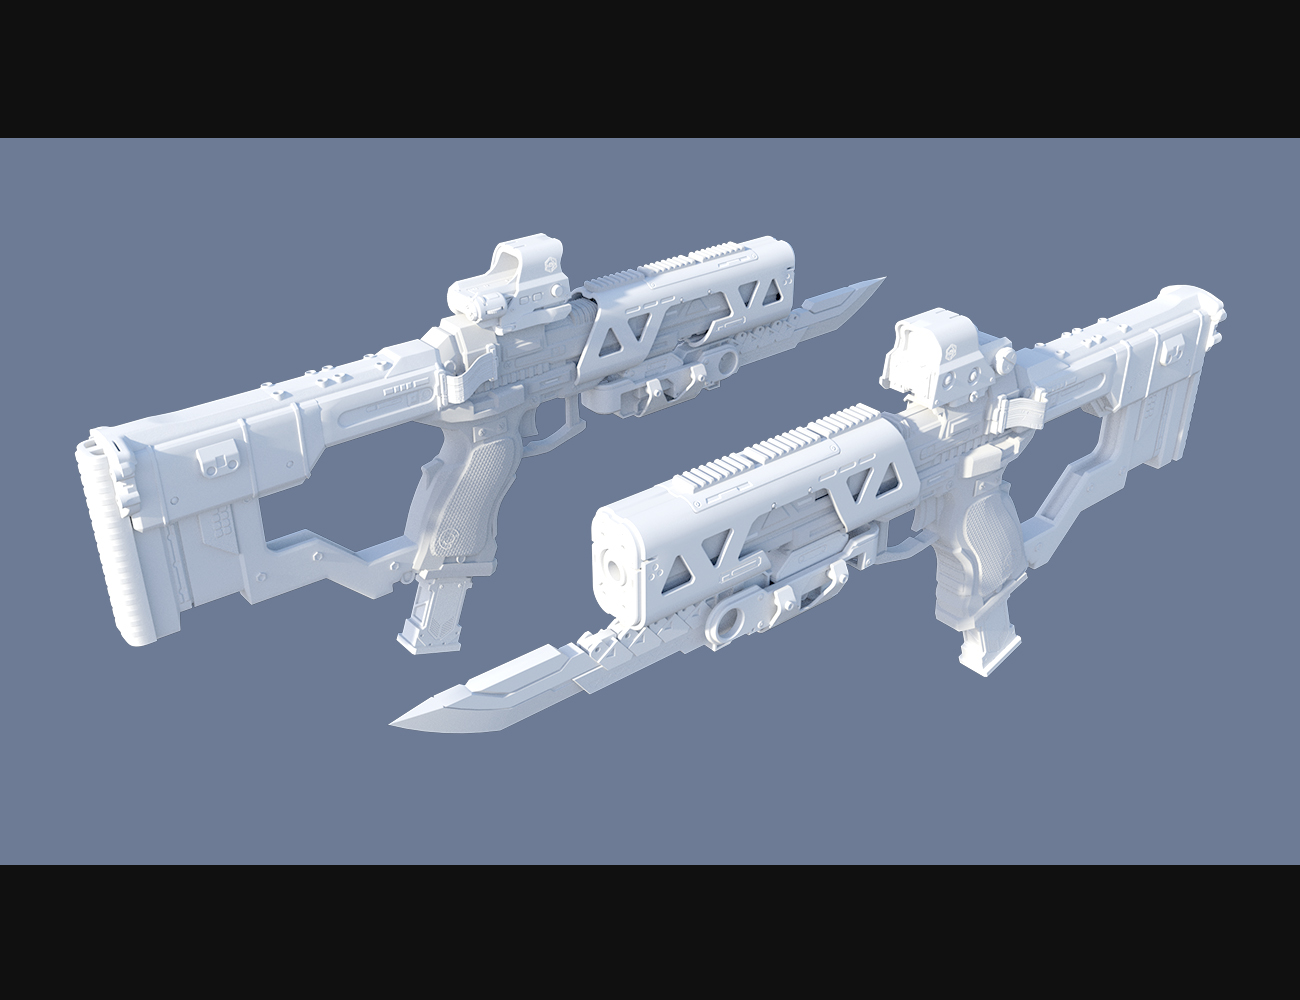 Cyberpunk Pistol SMG by: Polish, 3D Models by Daz 3D